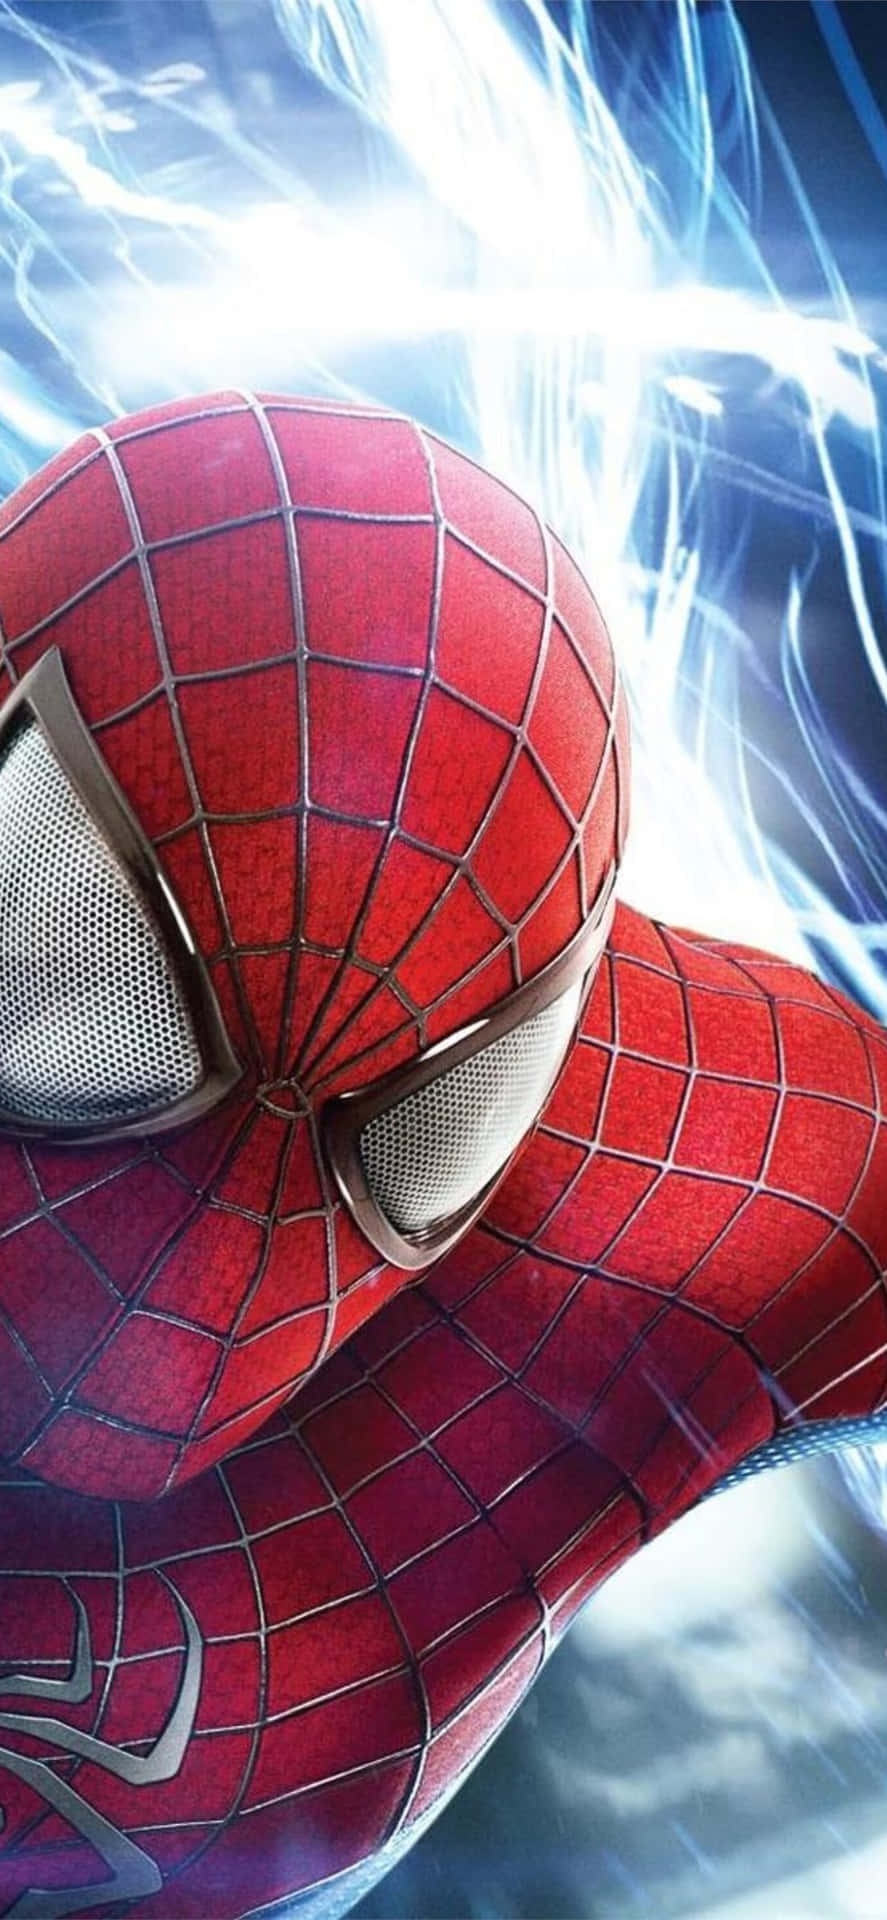 Geliv Åt Din Favorit Marvel Avenger Med Hjälp Av Amazing Spider Man-tema För Din Iphone. Wallpaper